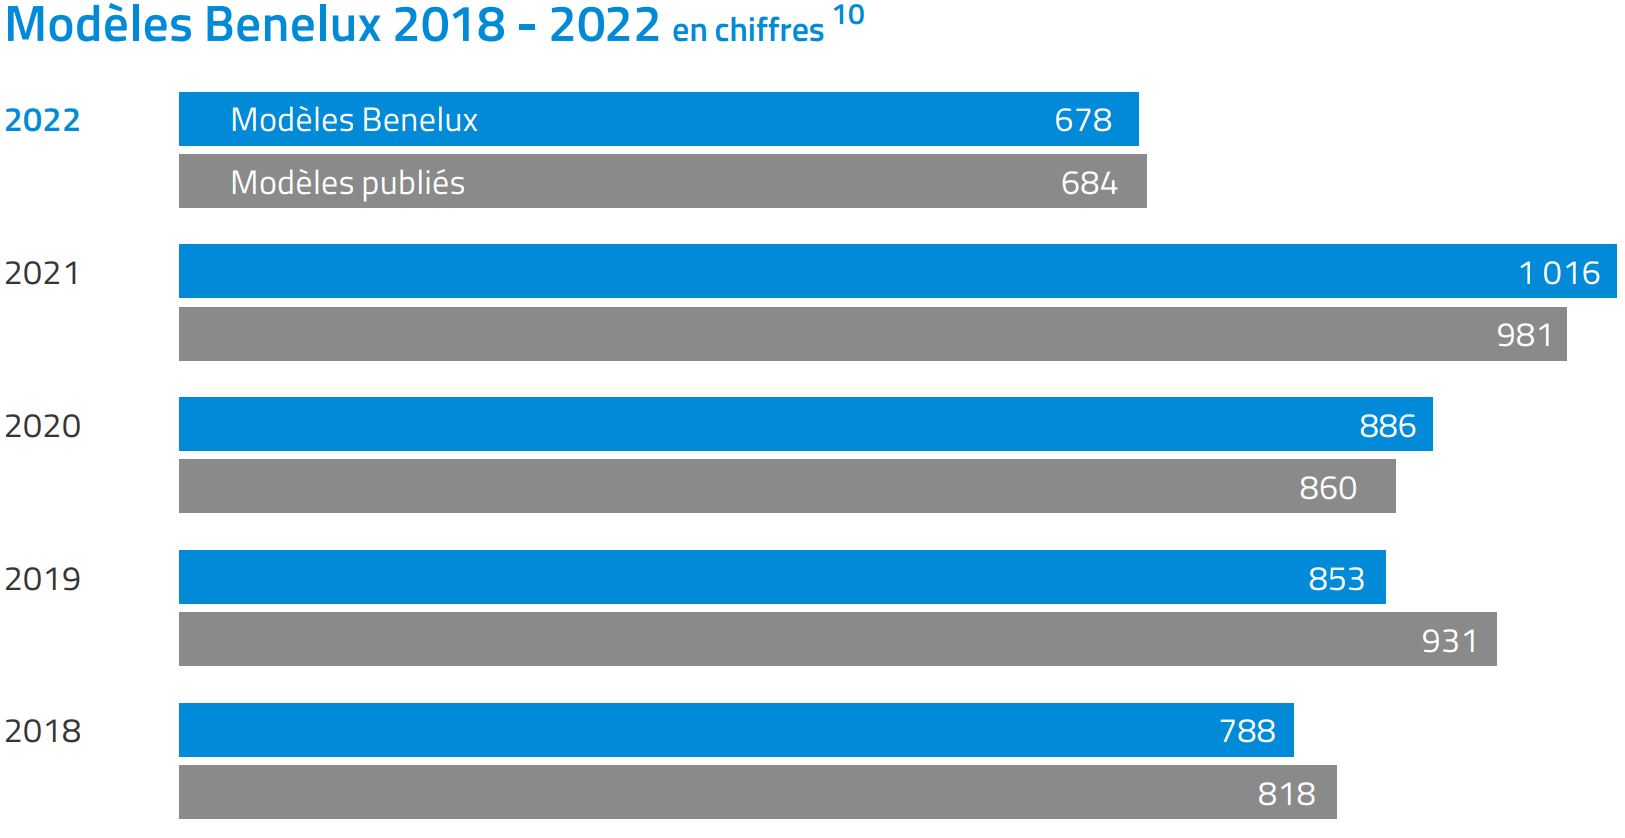 Bar chart modèles Benelux 2018-2022 en chiffres. Principaux résultats : 2022, modèles Benelux : 678, publiés : 684. C'est à la fois moins que les 4 années précédentes.